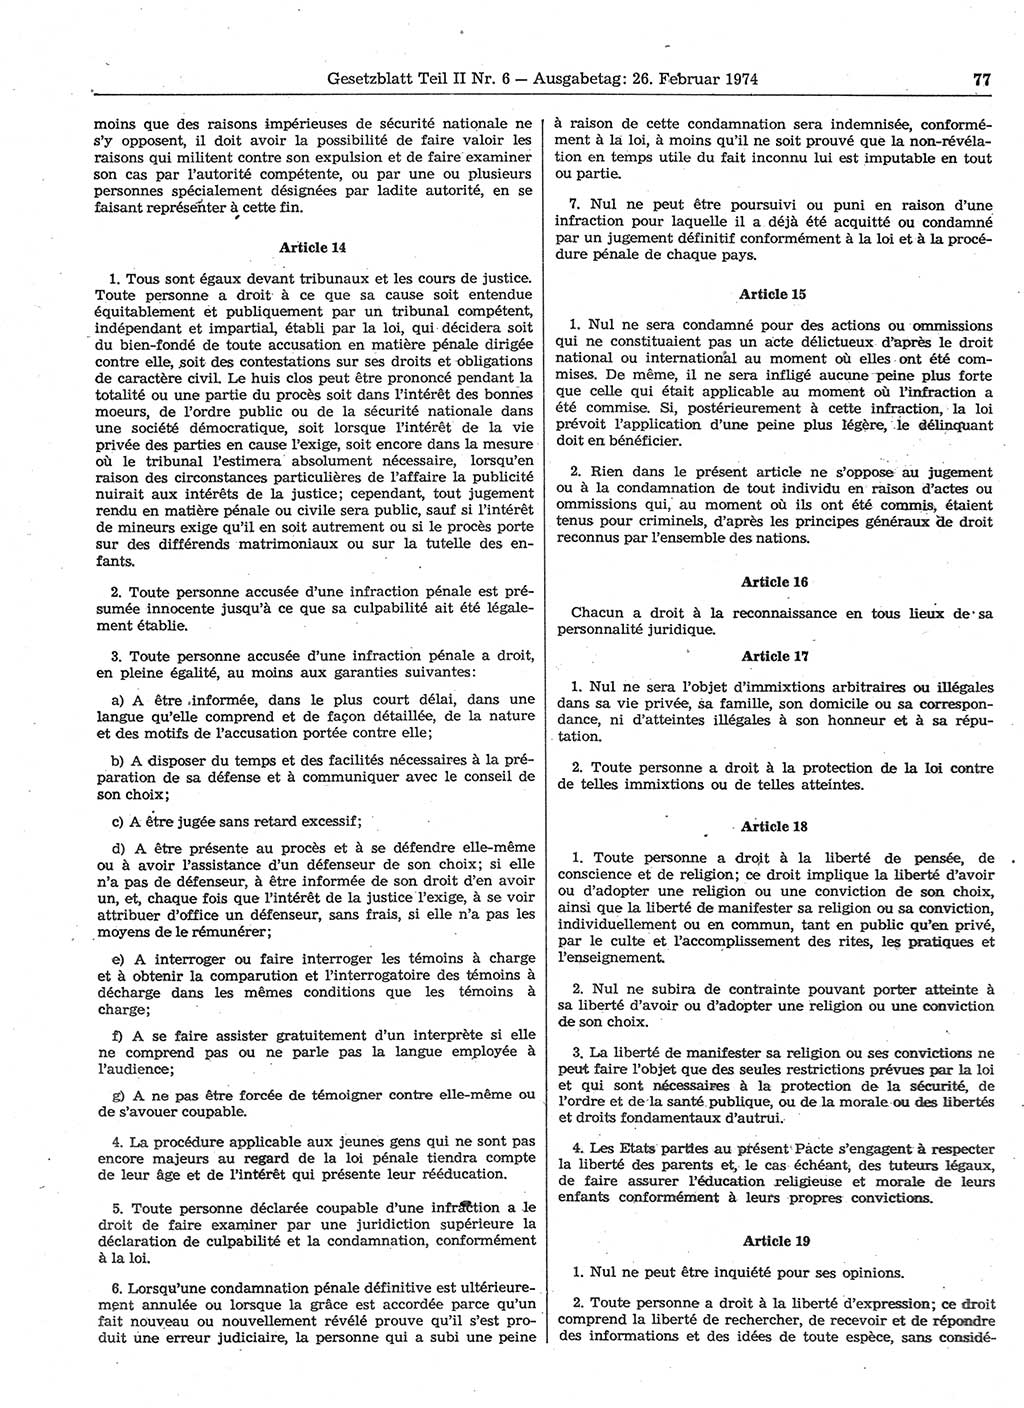 Gesetzblatt (GBl.) der Deutschen Demokratischen Republik (DDR) Teil ⅠⅠ 1974, Seite 77 (GBl. DDR ⅠⅠ 1974, S. 77)